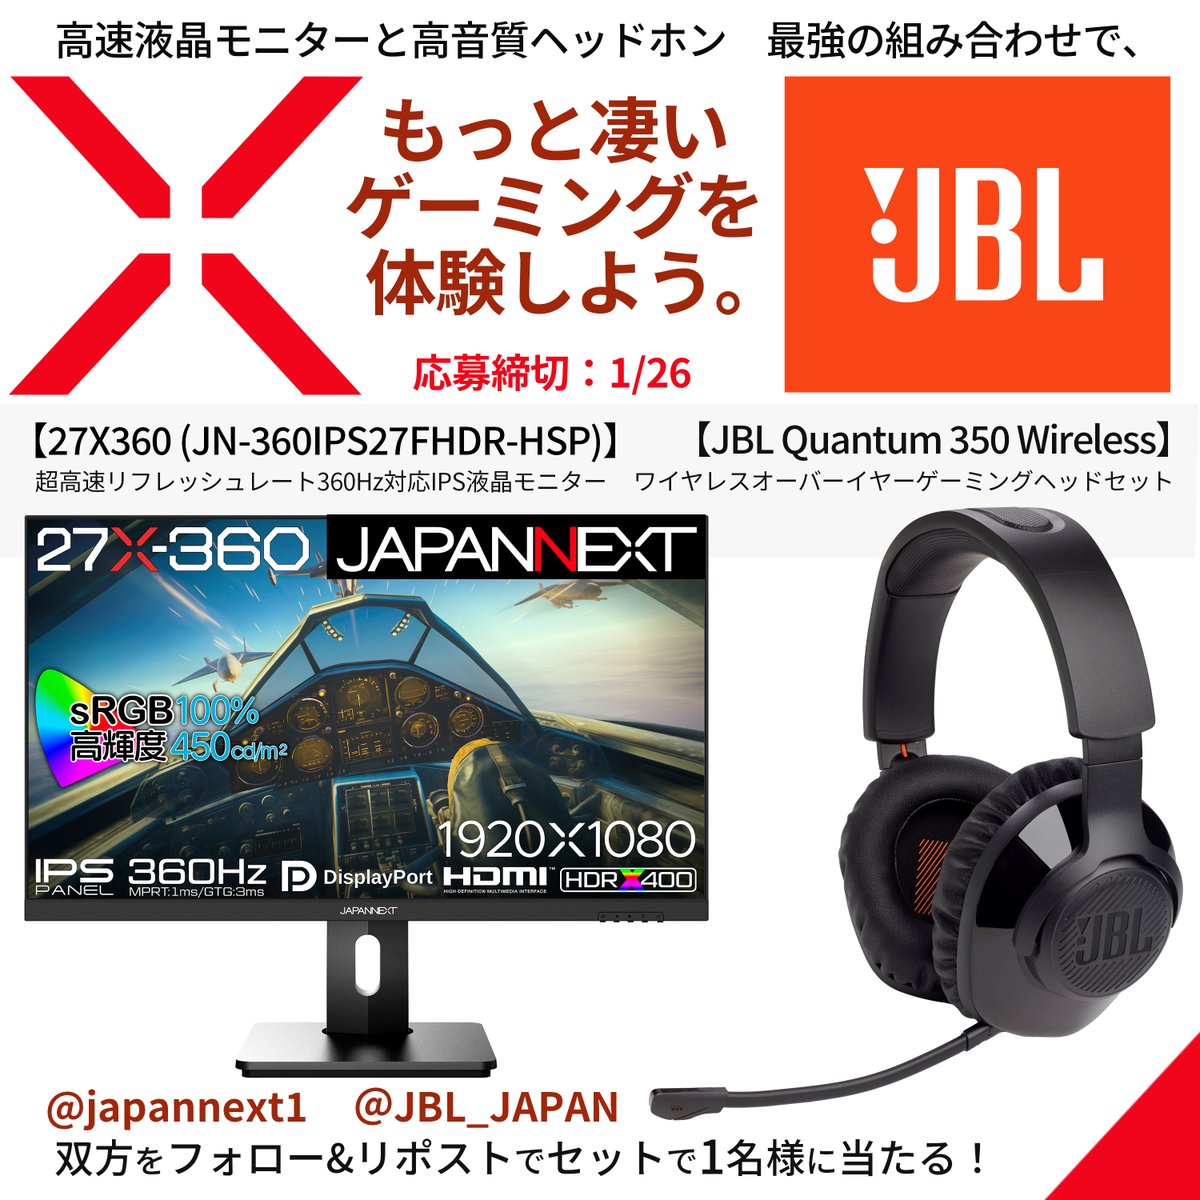 ／🎍🌅 JAPANNEXTからのBIGなお年玉✨ JBL JAPAN様とのスペシャルコラボキャンペーン第2弾を開催します！ ＼🎍🌅 第2弾：【ゲーミングセット】😆💫 🖥️JAPANNEXTのゲーミングモニター「27X-360 」と、 🎧JBL JAPAN（@JBL_JAPAN）様のワイヤレスオーバーイヤーゲーミングヘッドセット「JBL Quantum…